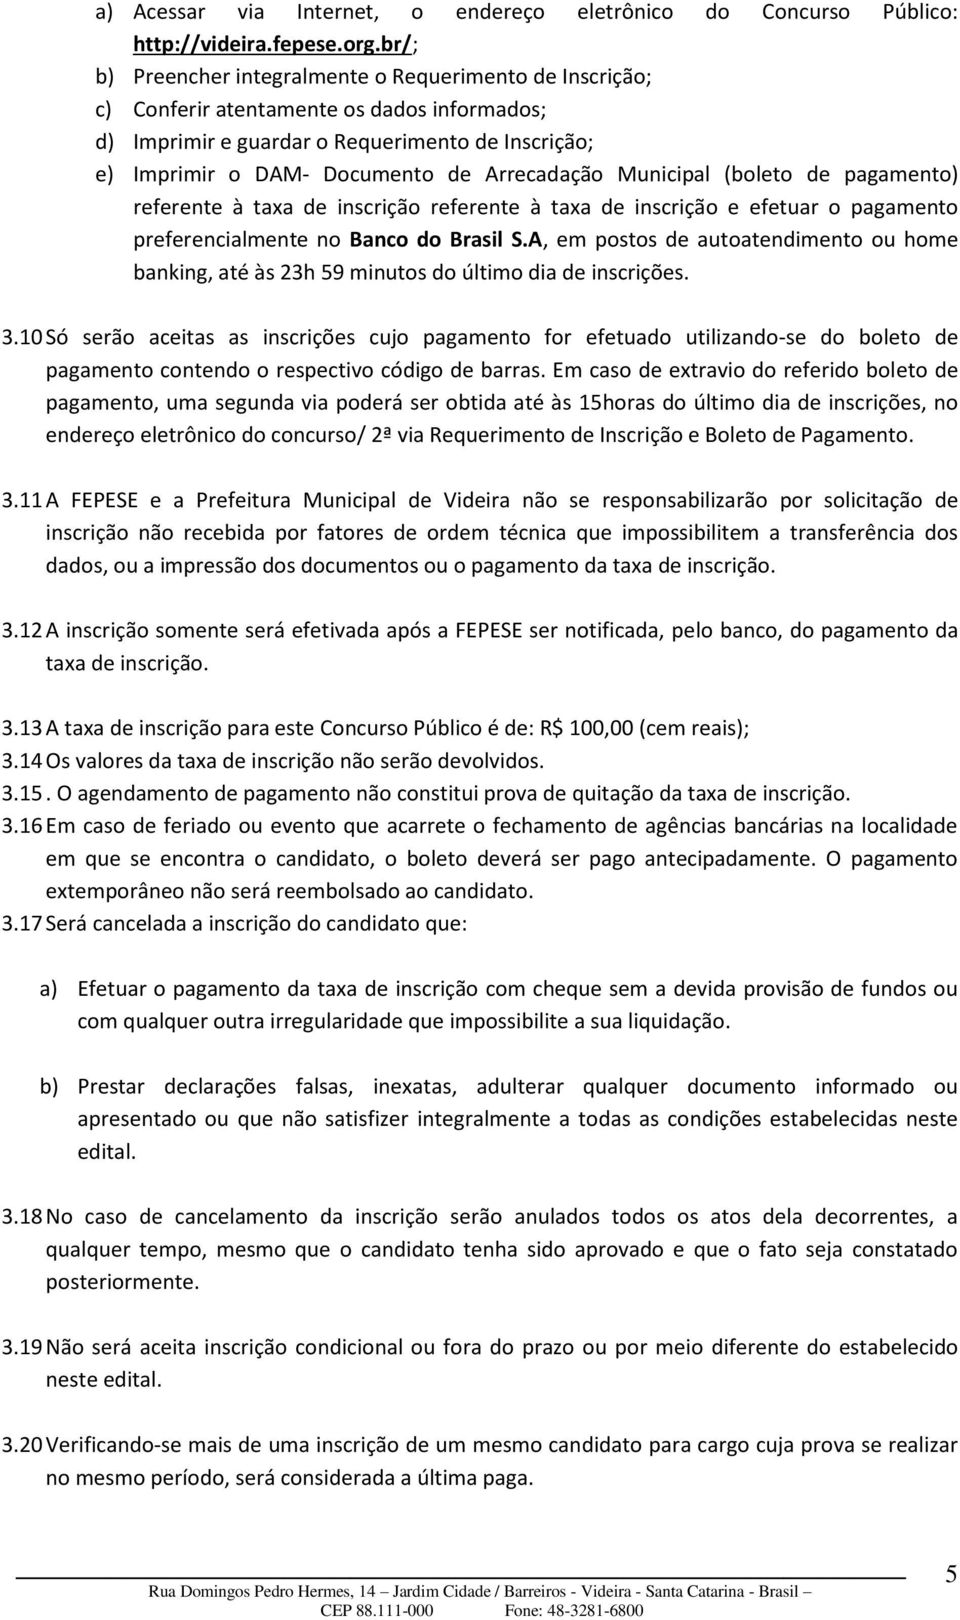 Arrecadação Municipal (boleto de pagamento) referente à taxa de inscrição referente à taxa de inscrição e efetuar o pagamento preferencialmente no Banco do Brasil S.